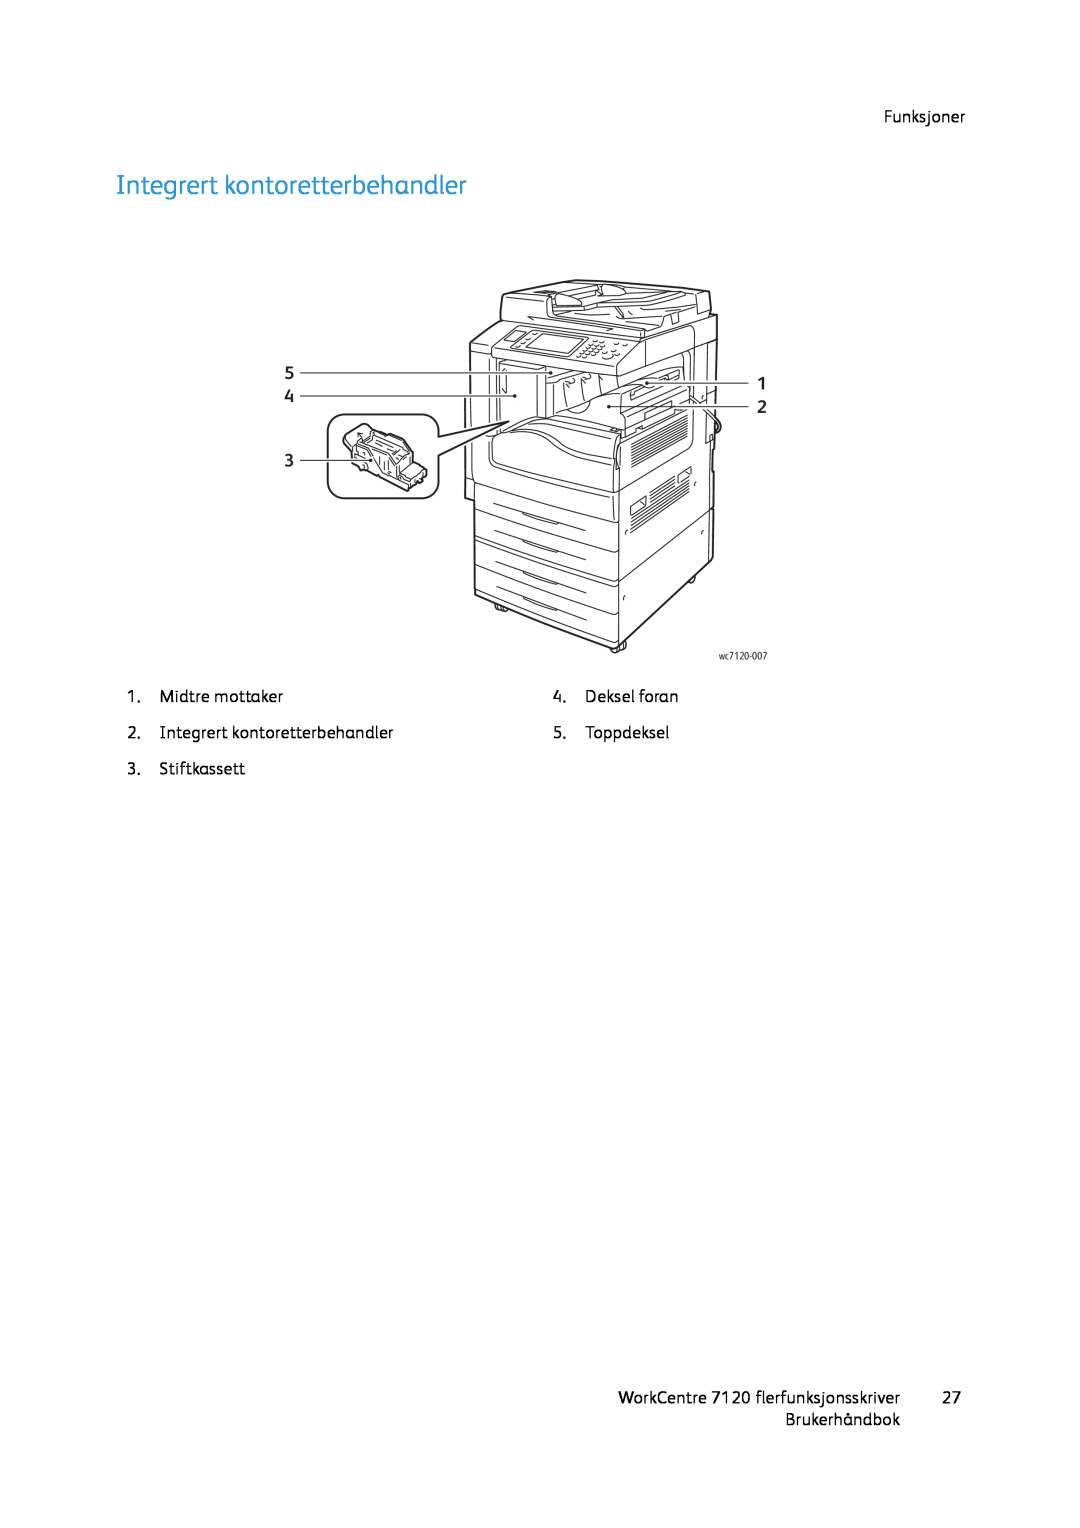 Xerox 7120 manual Integrert kontoretterbehandler, Funksjoner, Midtre mottaker, Toppdeksel, Stiftkassett, Brukerhåndbok 